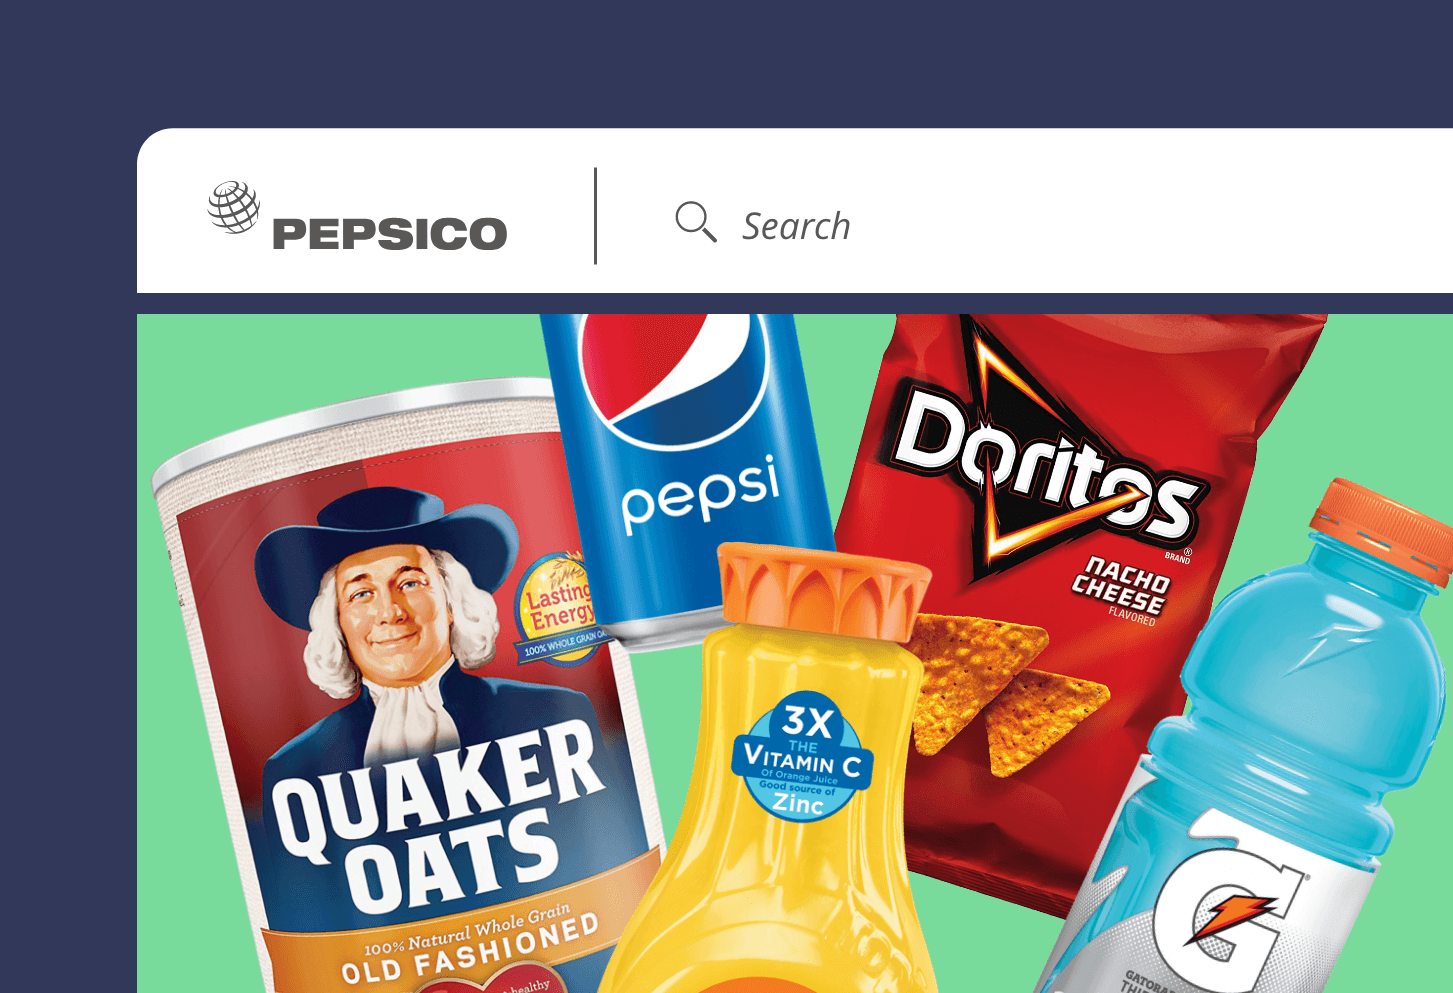 PepsiCo.com